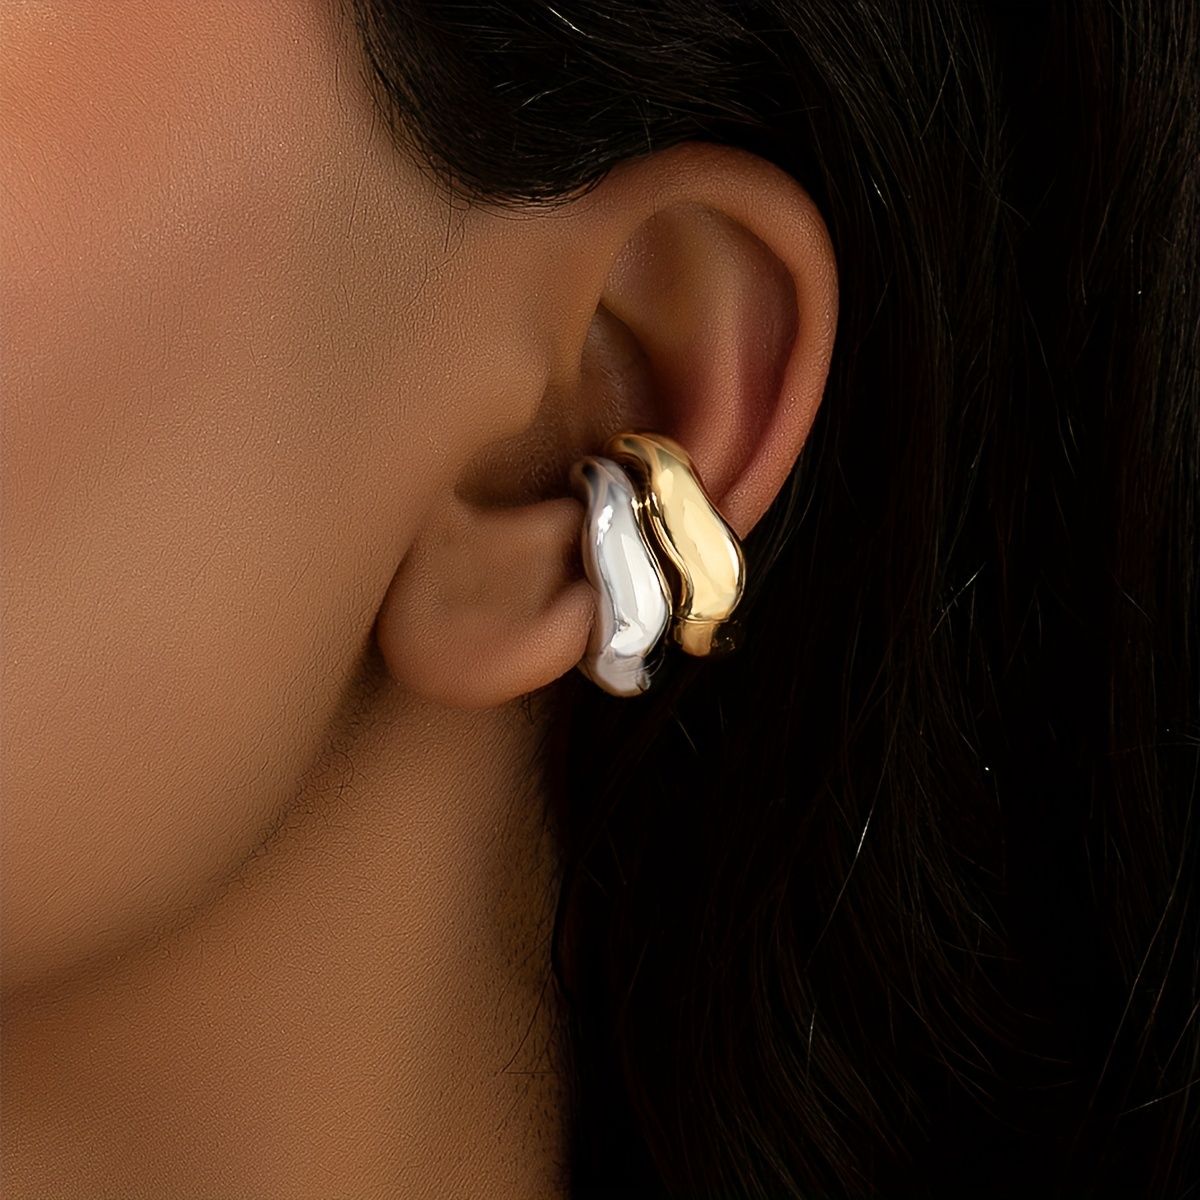 5Pcs Ear Cuff Earrings Non-Pierced Wrap Clip On Punk Rock Gold Cuff Jewelry  Gift